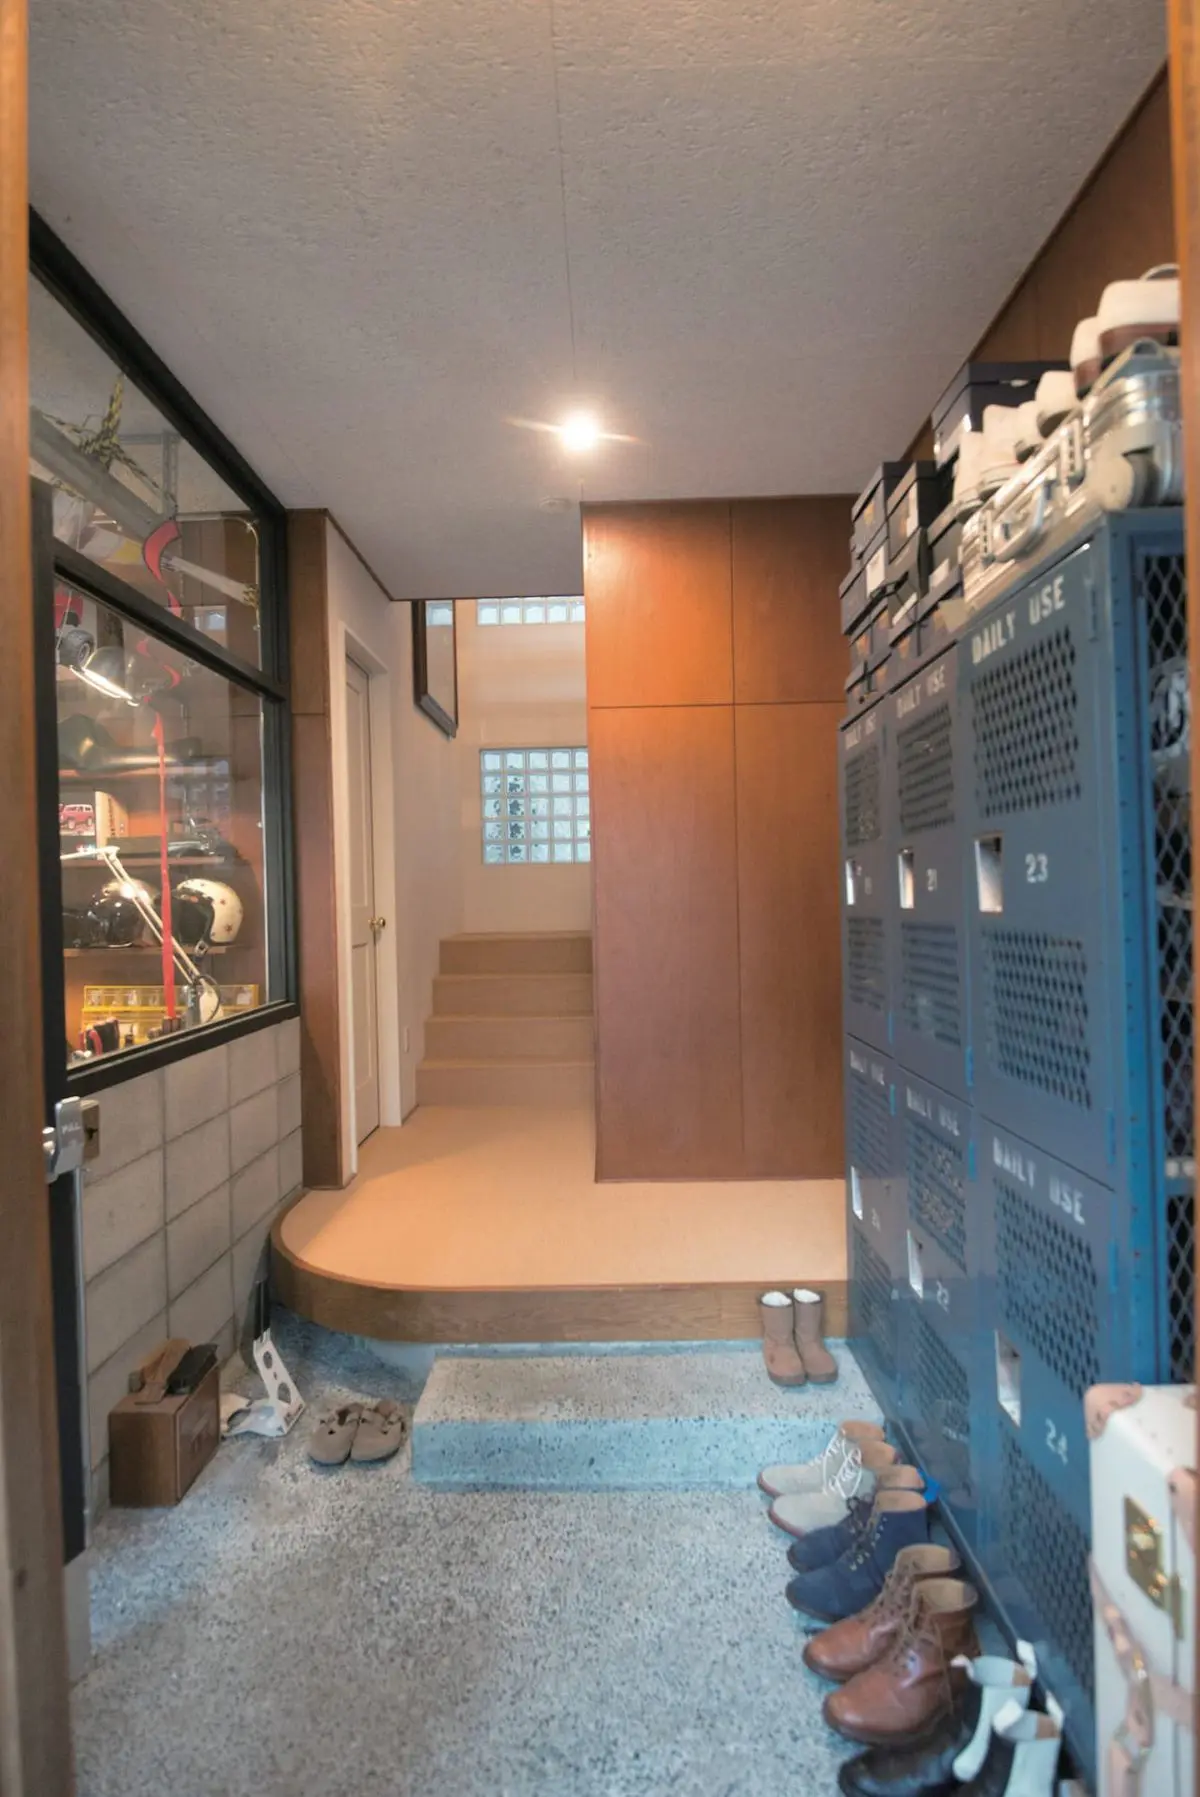 ビルトインガレージの奥を趣味の世界に Diyの作業場としても使える 自分だけのスペース 東京都 水野邸 小さな秘密基地の造り方 男の隠れ家デジタル